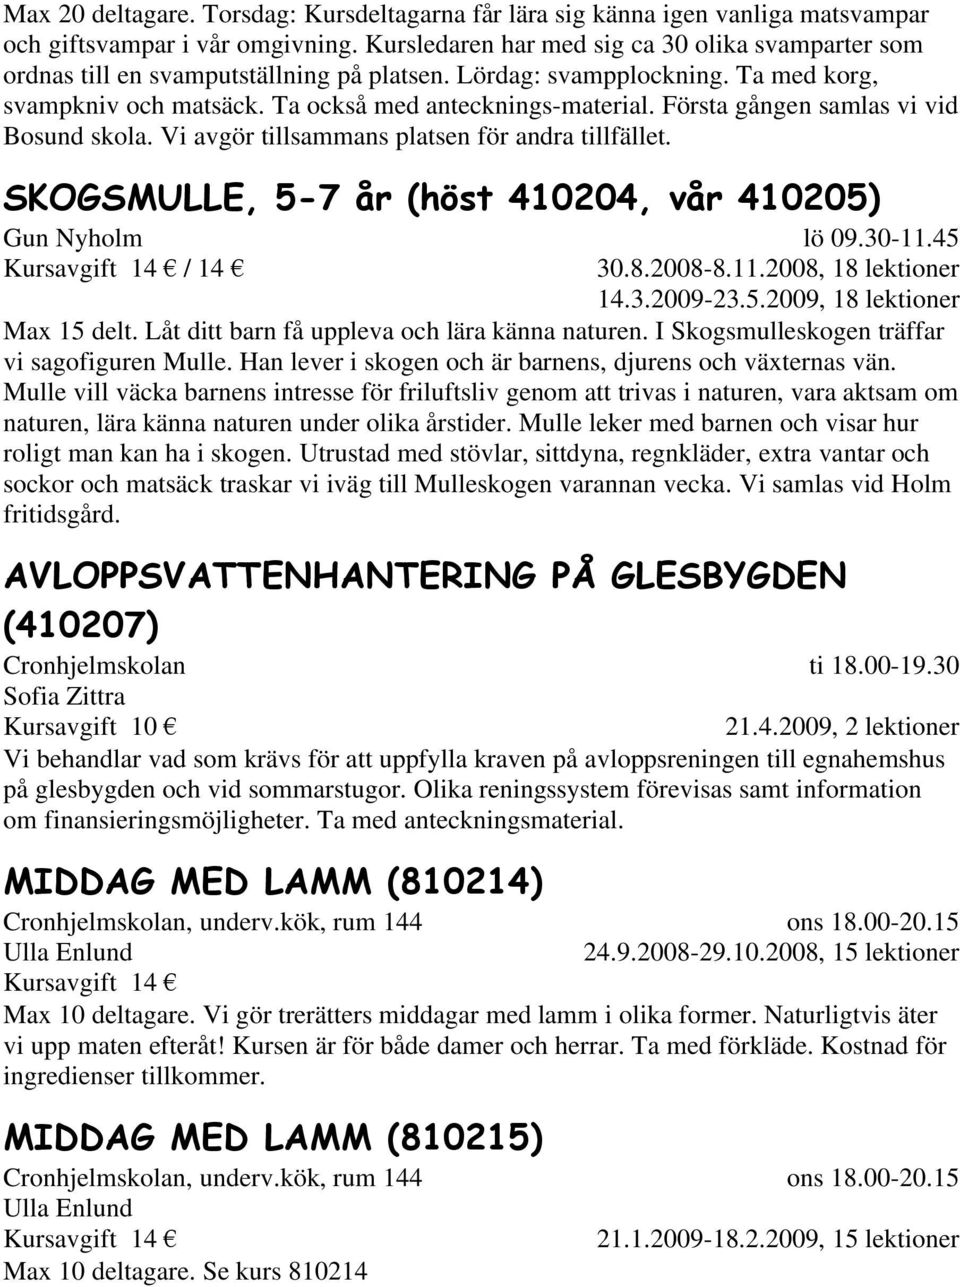 Första gången samlas vi vid Bosund skola. Vi avgör tillsammans platsen för andra tillfället. SKOGSMULLE, 5-7 år (höst 410204, vår 410205) Gun Nyholm lö 09.30-11.45 30.8.2008-8.11.2008, 18 lektioner 14.